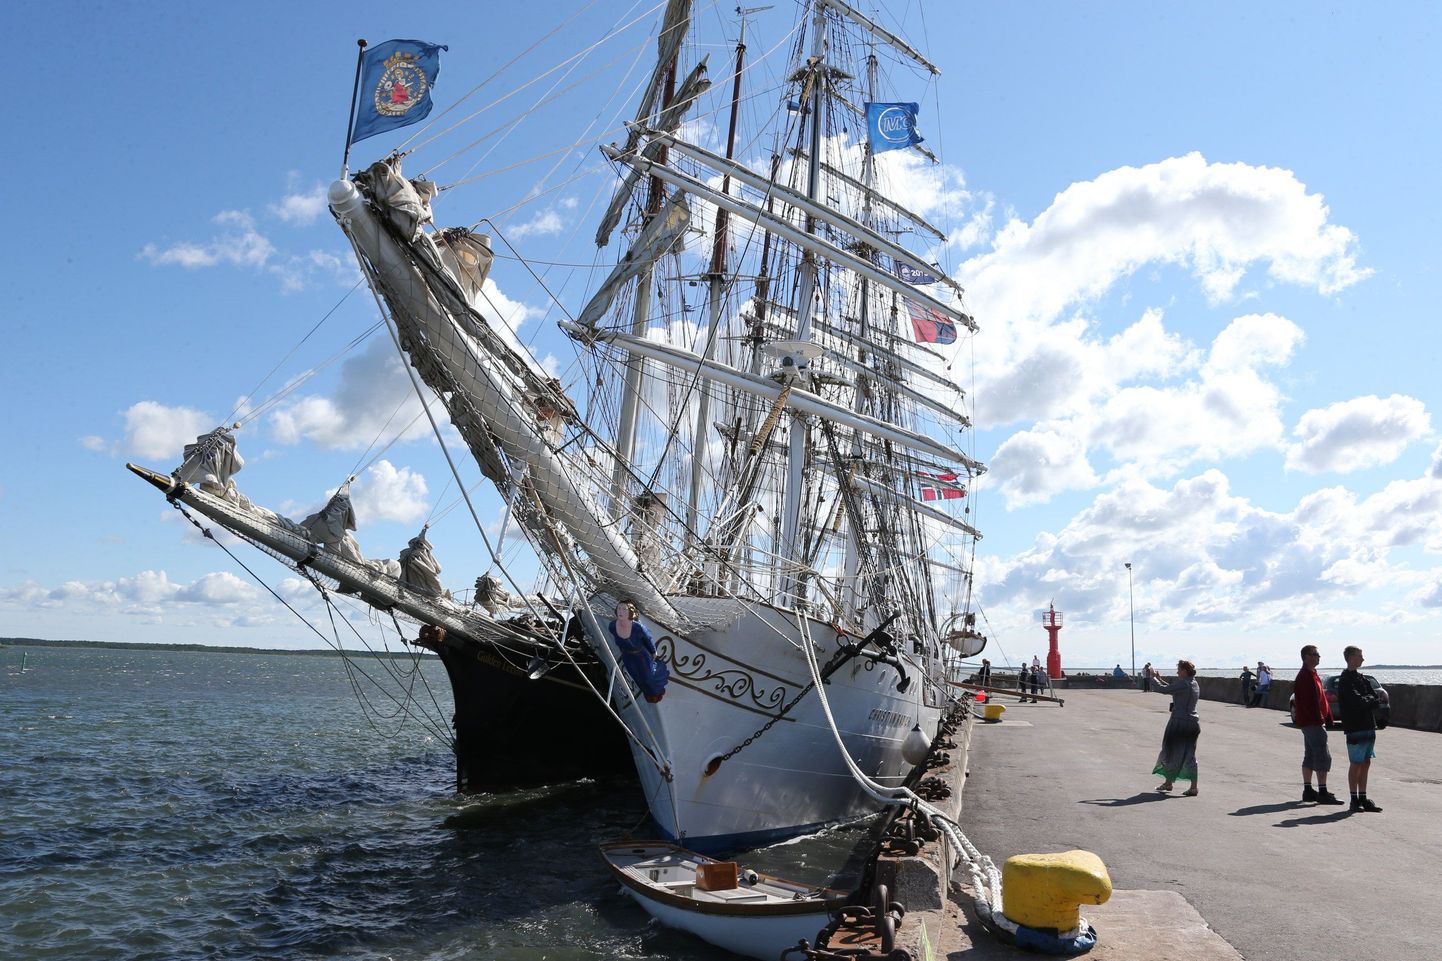 Saaremaa merenädala avanud The Tall Ships Races rahvusvahelise regati purjekatest on enamik jõudnud Roomassaare sadamasse. Tegu on ilmselt ajaloo suurima purjelaevade visiidiga Saaremaale.